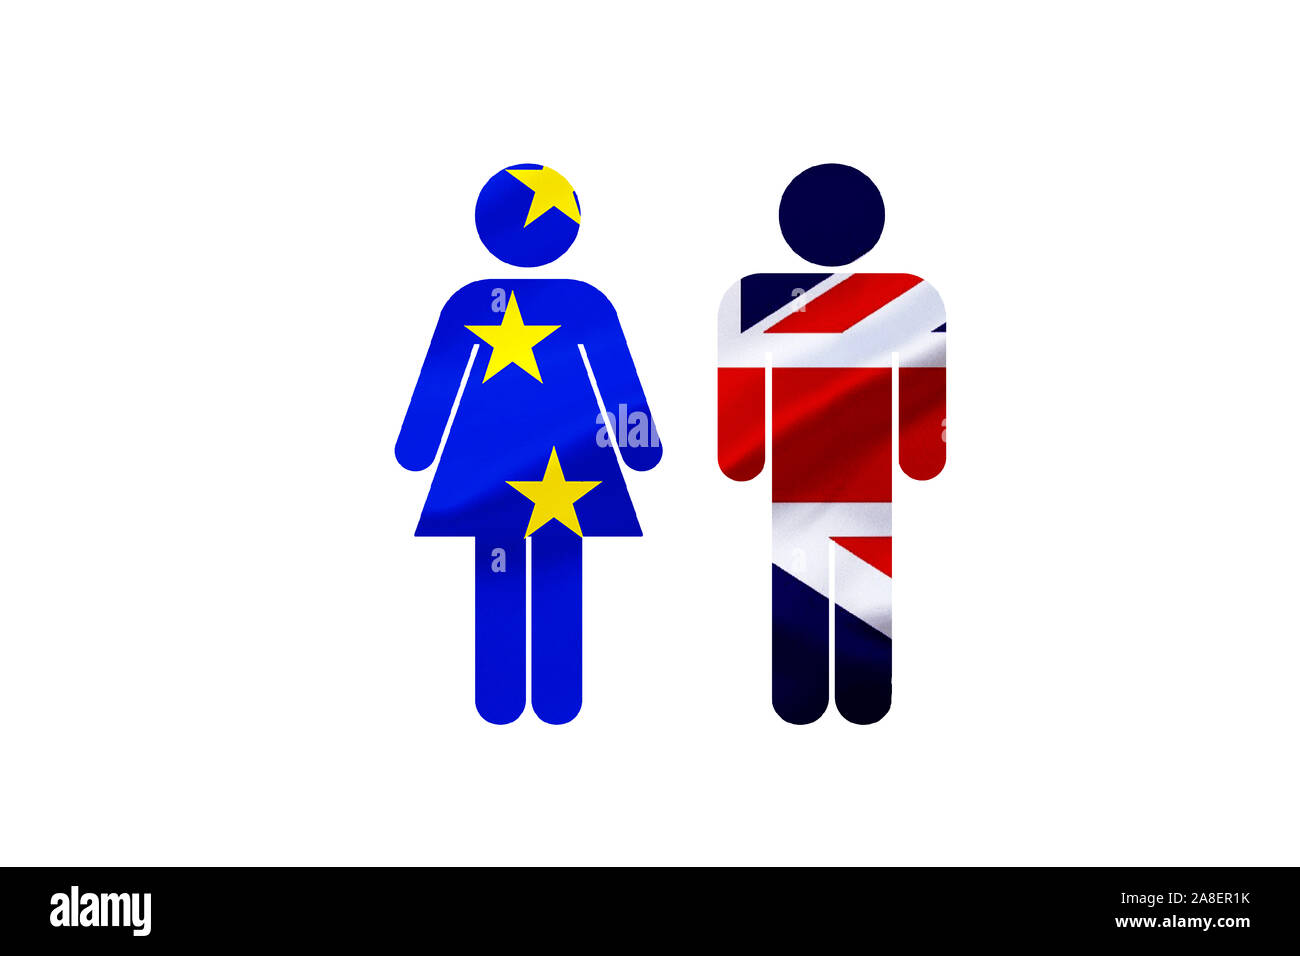 Brexit, Euroflagge, Flagge, Vereinigtes Koenigreich, UK, Grossbritannien, Eurostars, Mann und Frau, Piktogramm,  Ehe auf zeit, Stock Photo